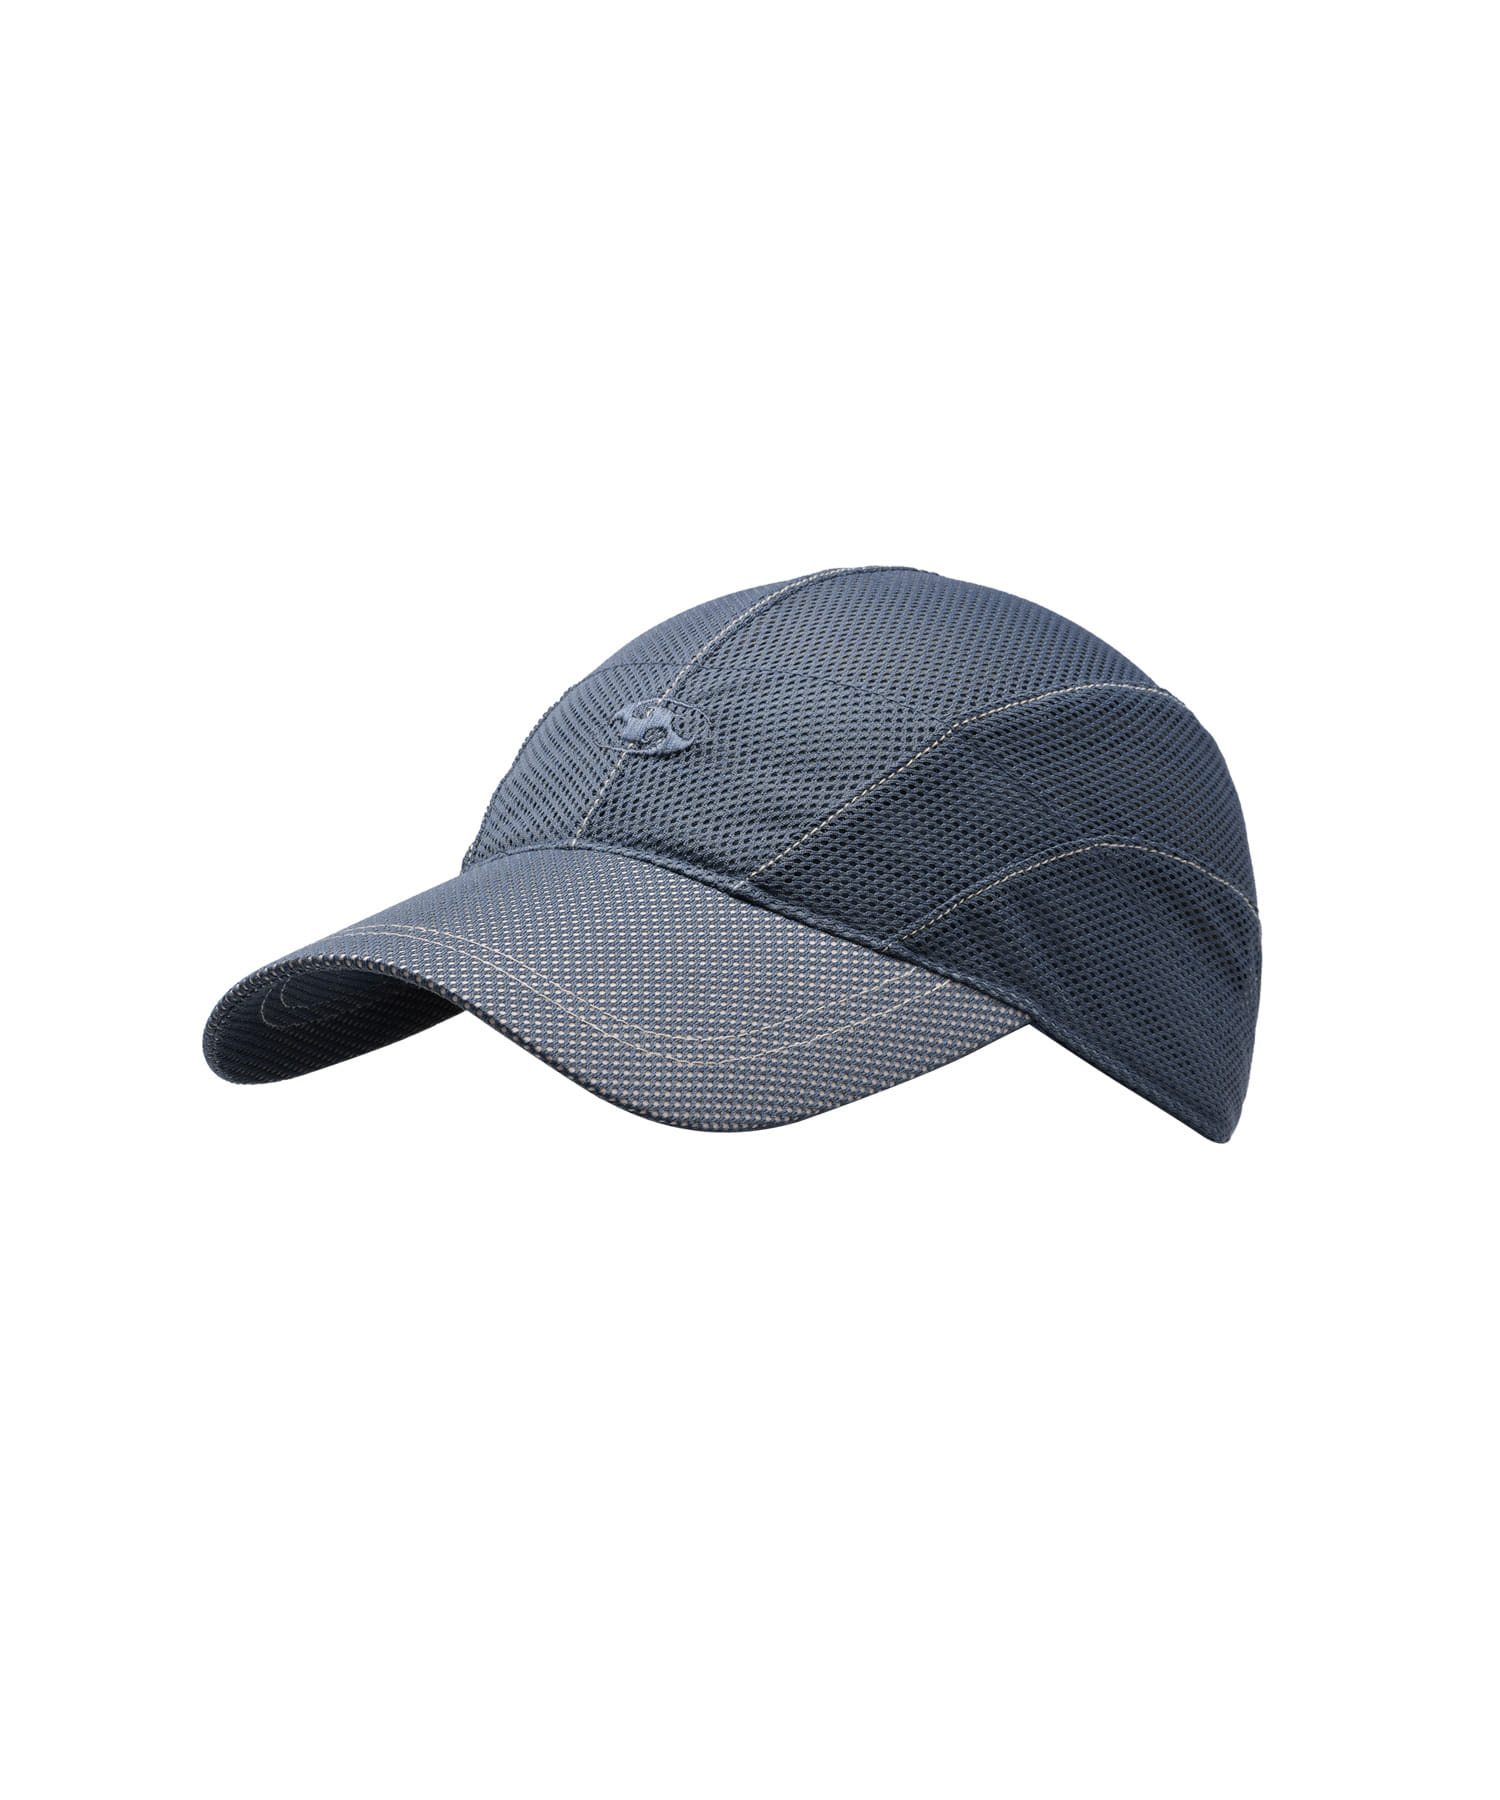 MESH CAP [BLUE CHARCOAL]